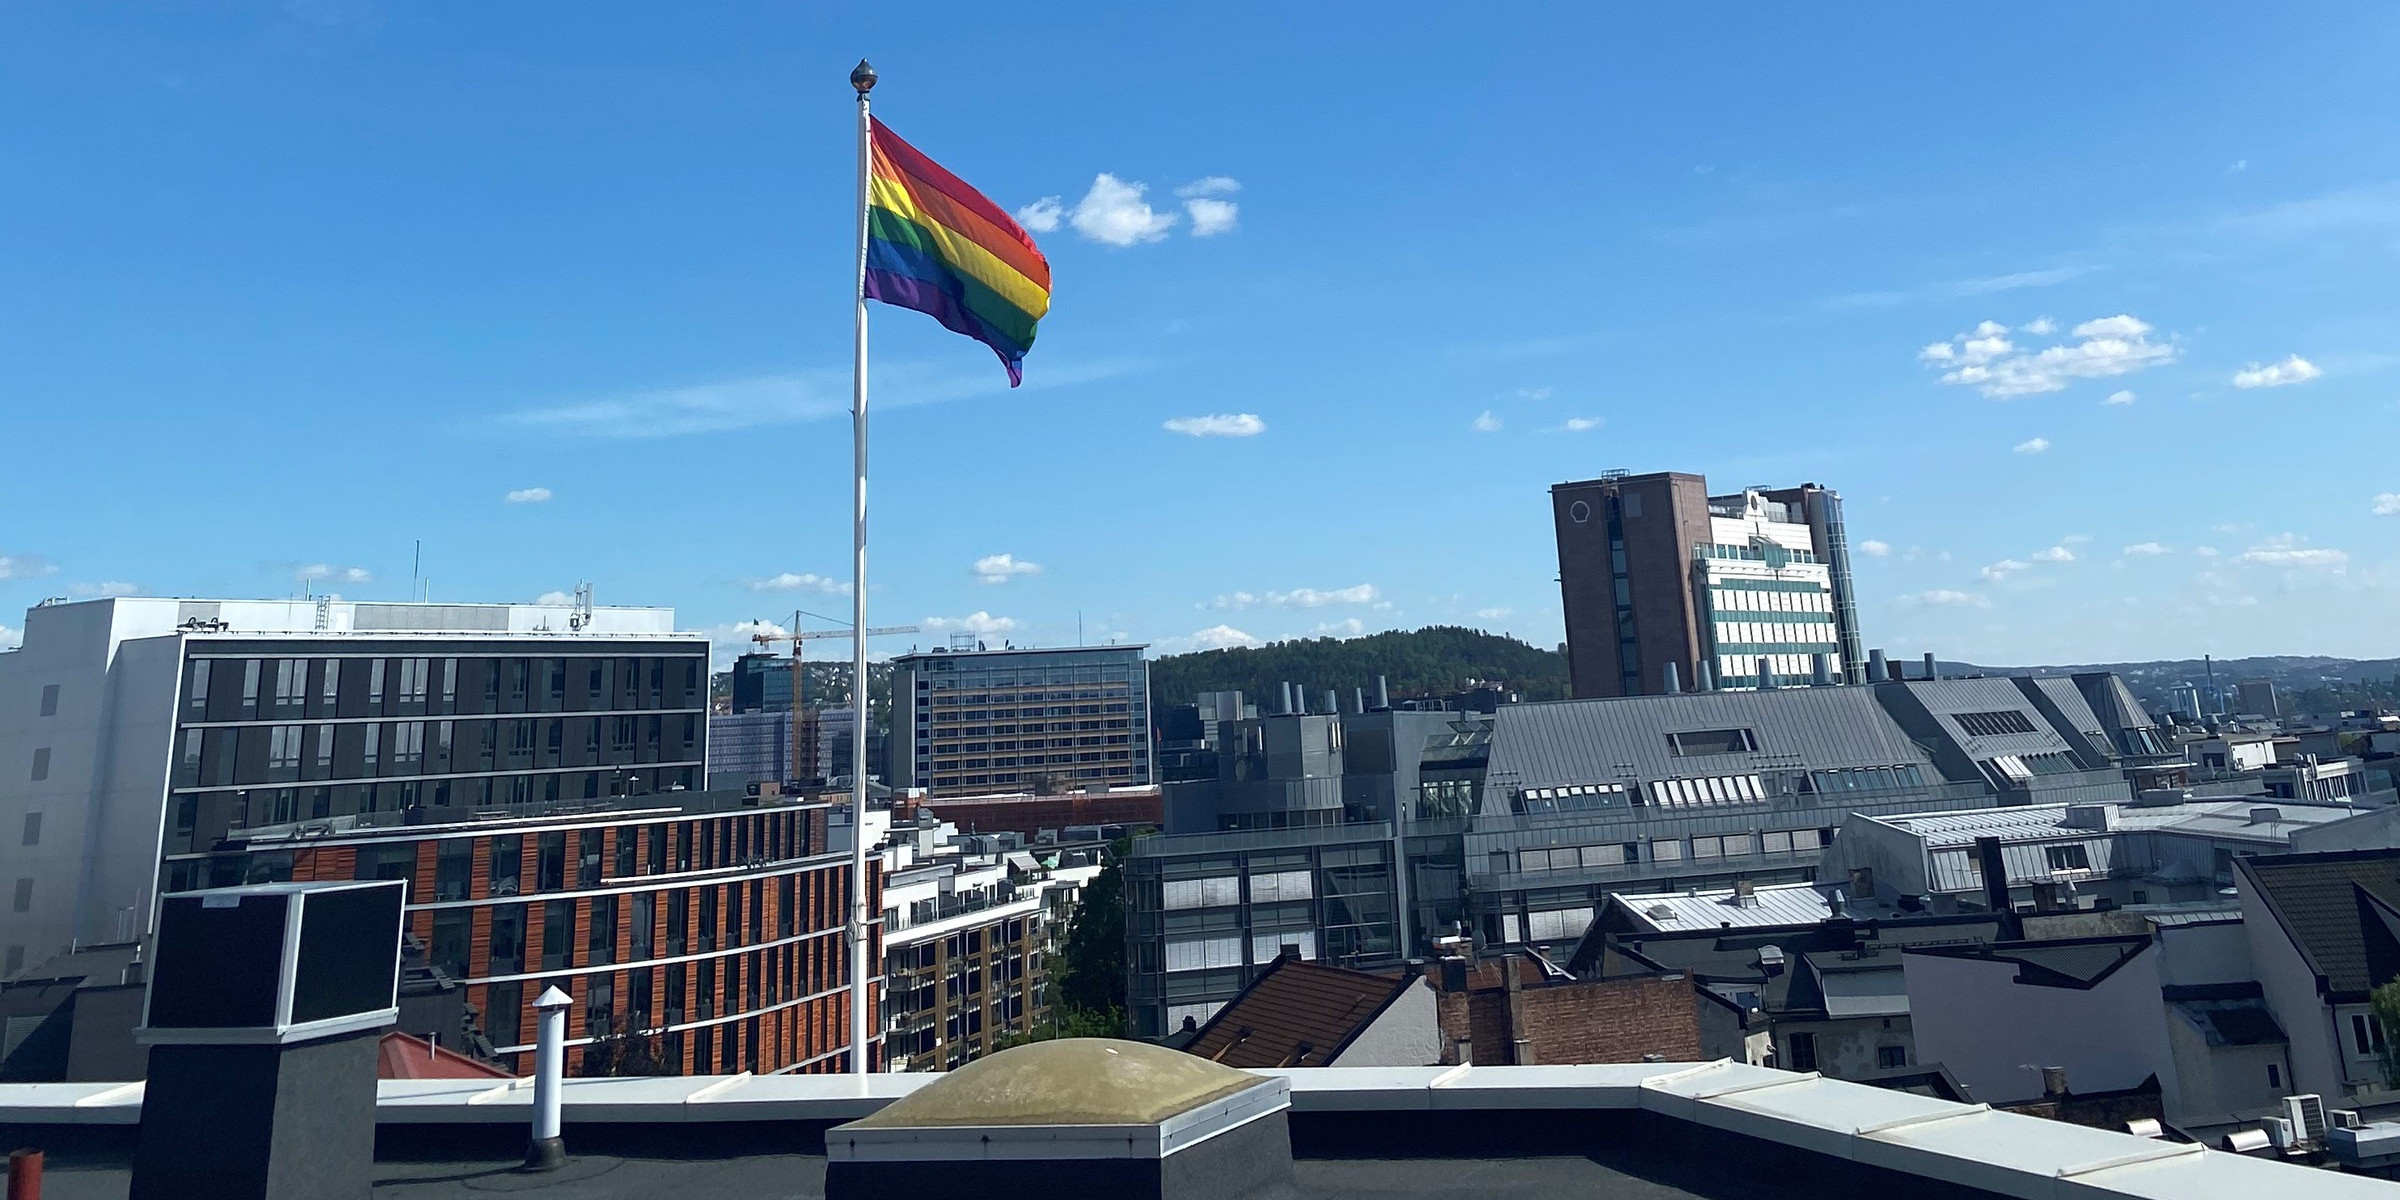 Pride-flagg på taket av en bygning.